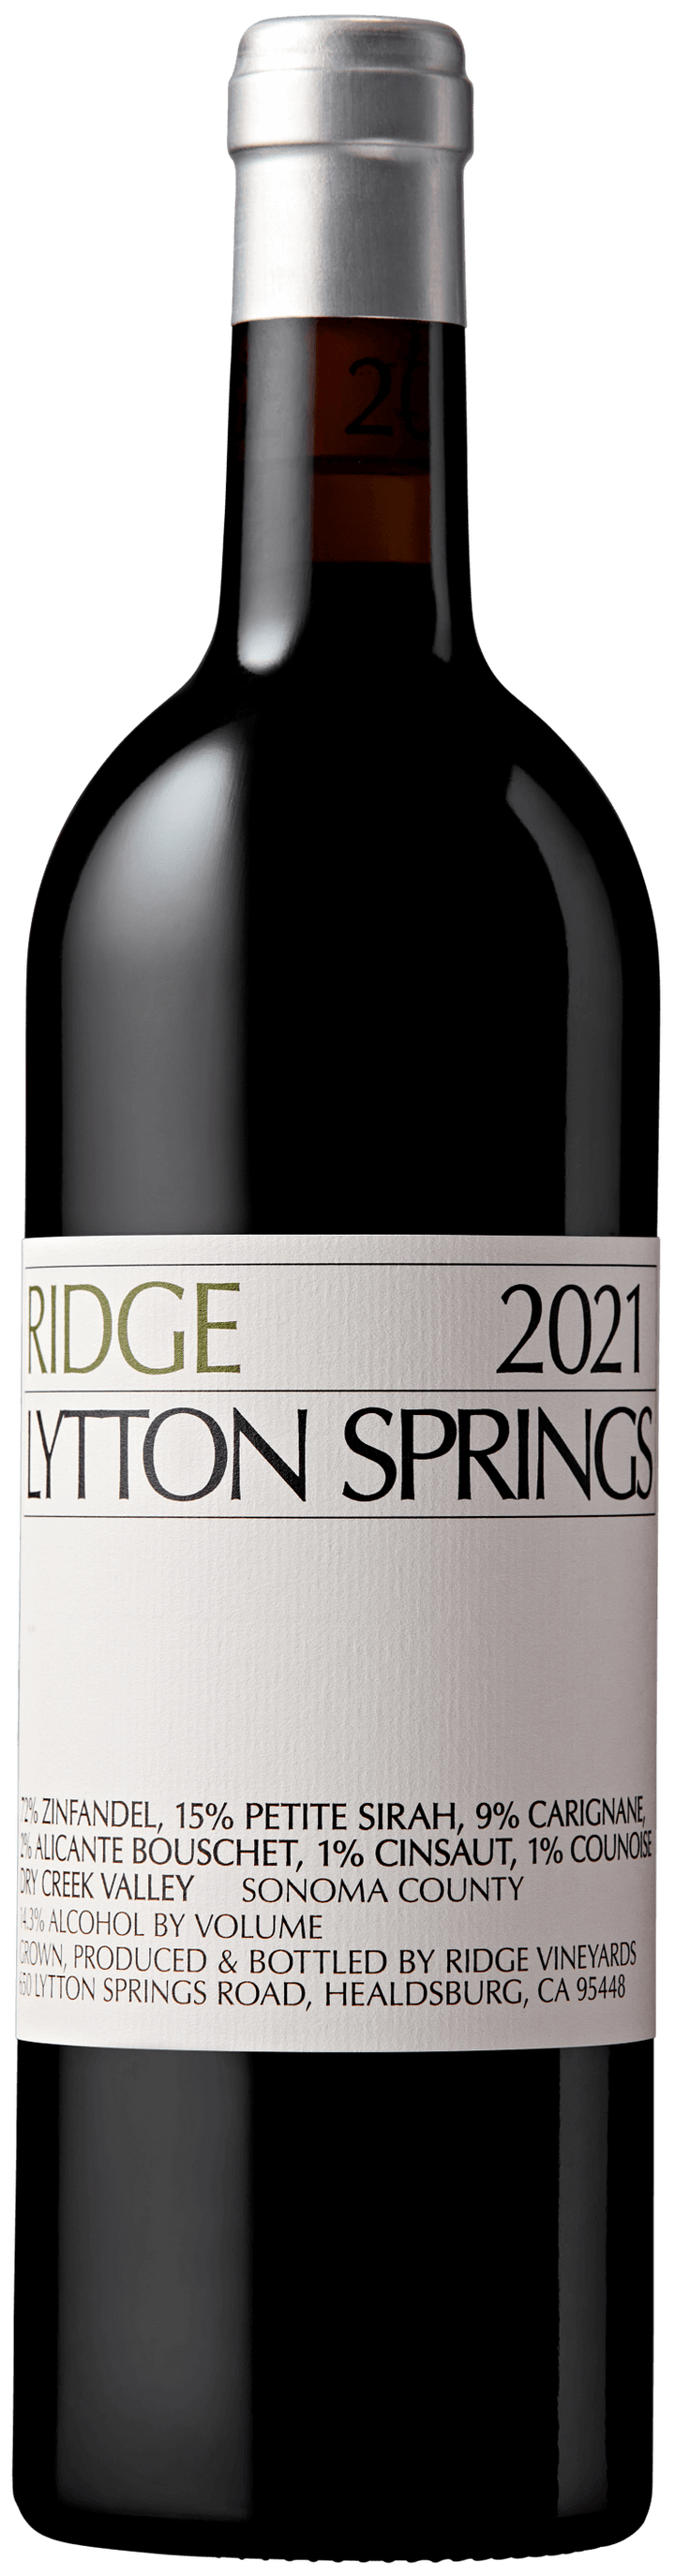 2021 Ridge Vineyards Proprietary Red Wine Lytton Springs